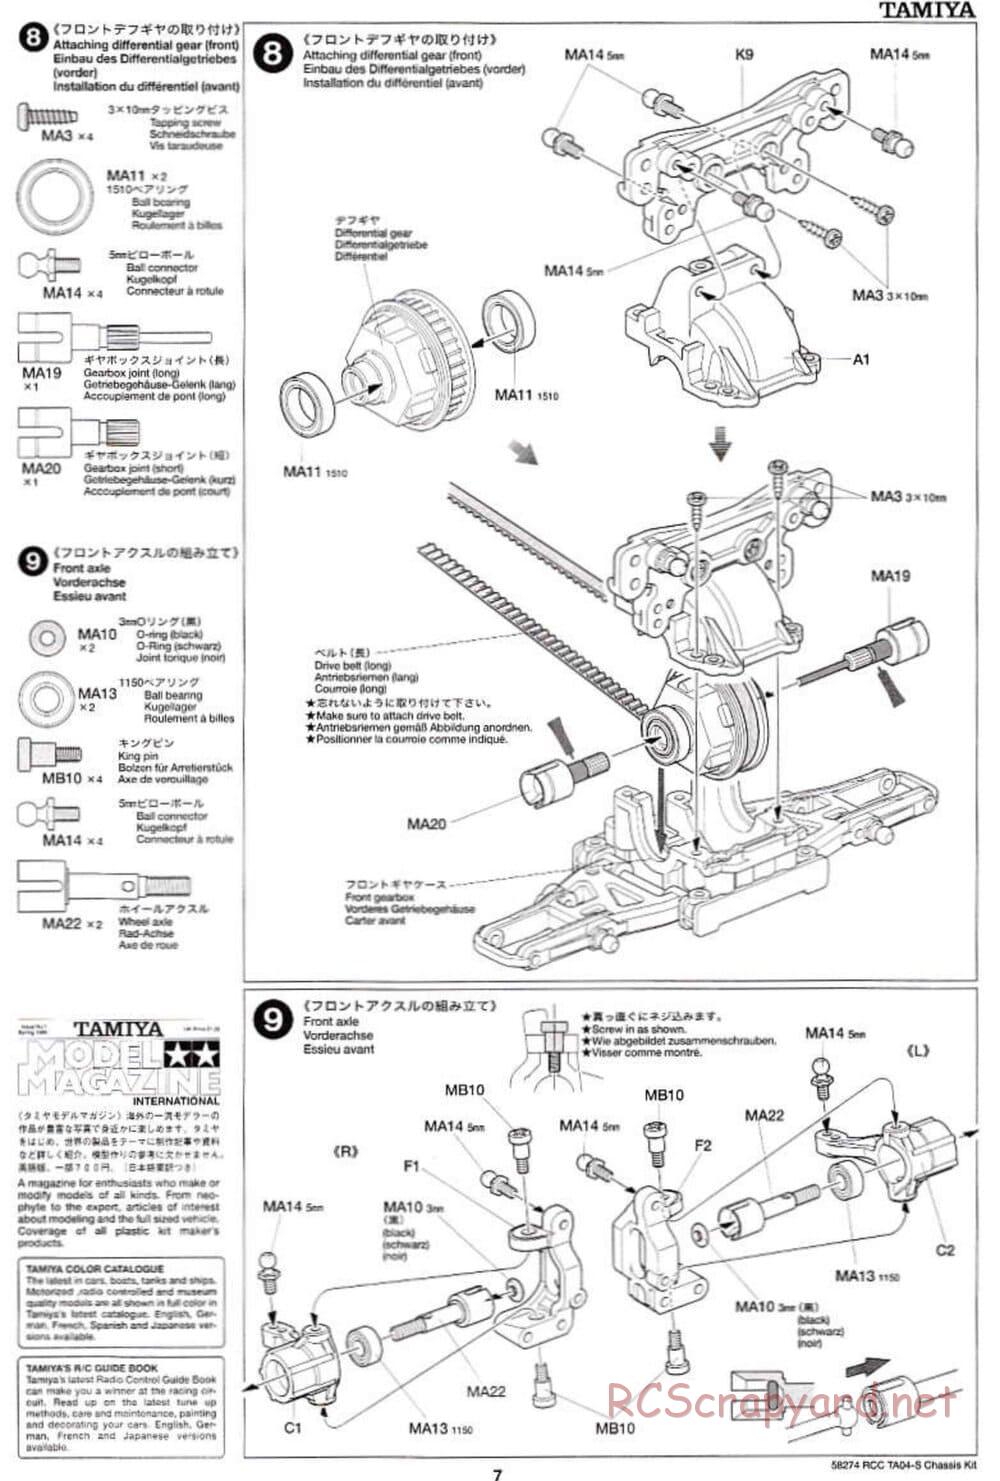 Tamiya - 58274 - Manual • TA-04S Chassis • RCScrapyard - Radio ...